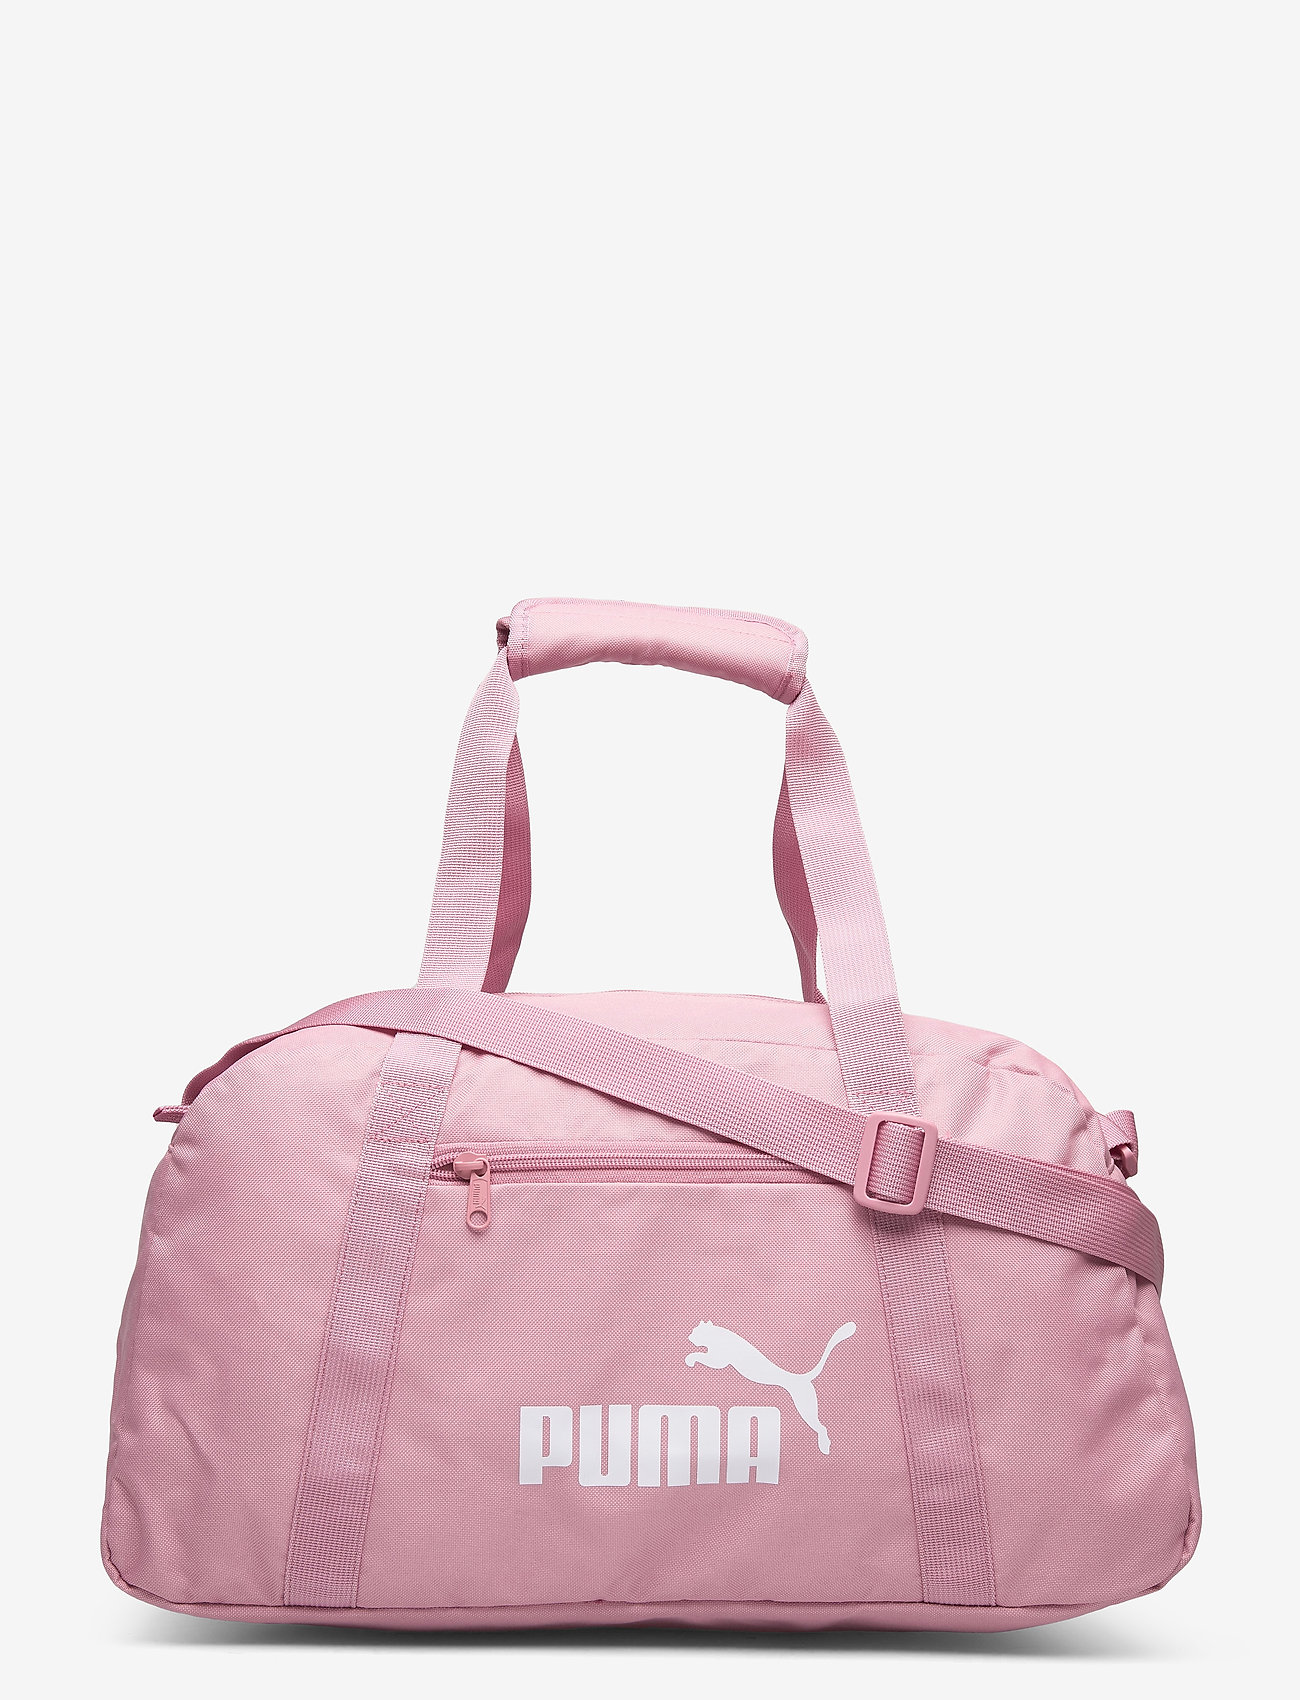 puma weekender bag